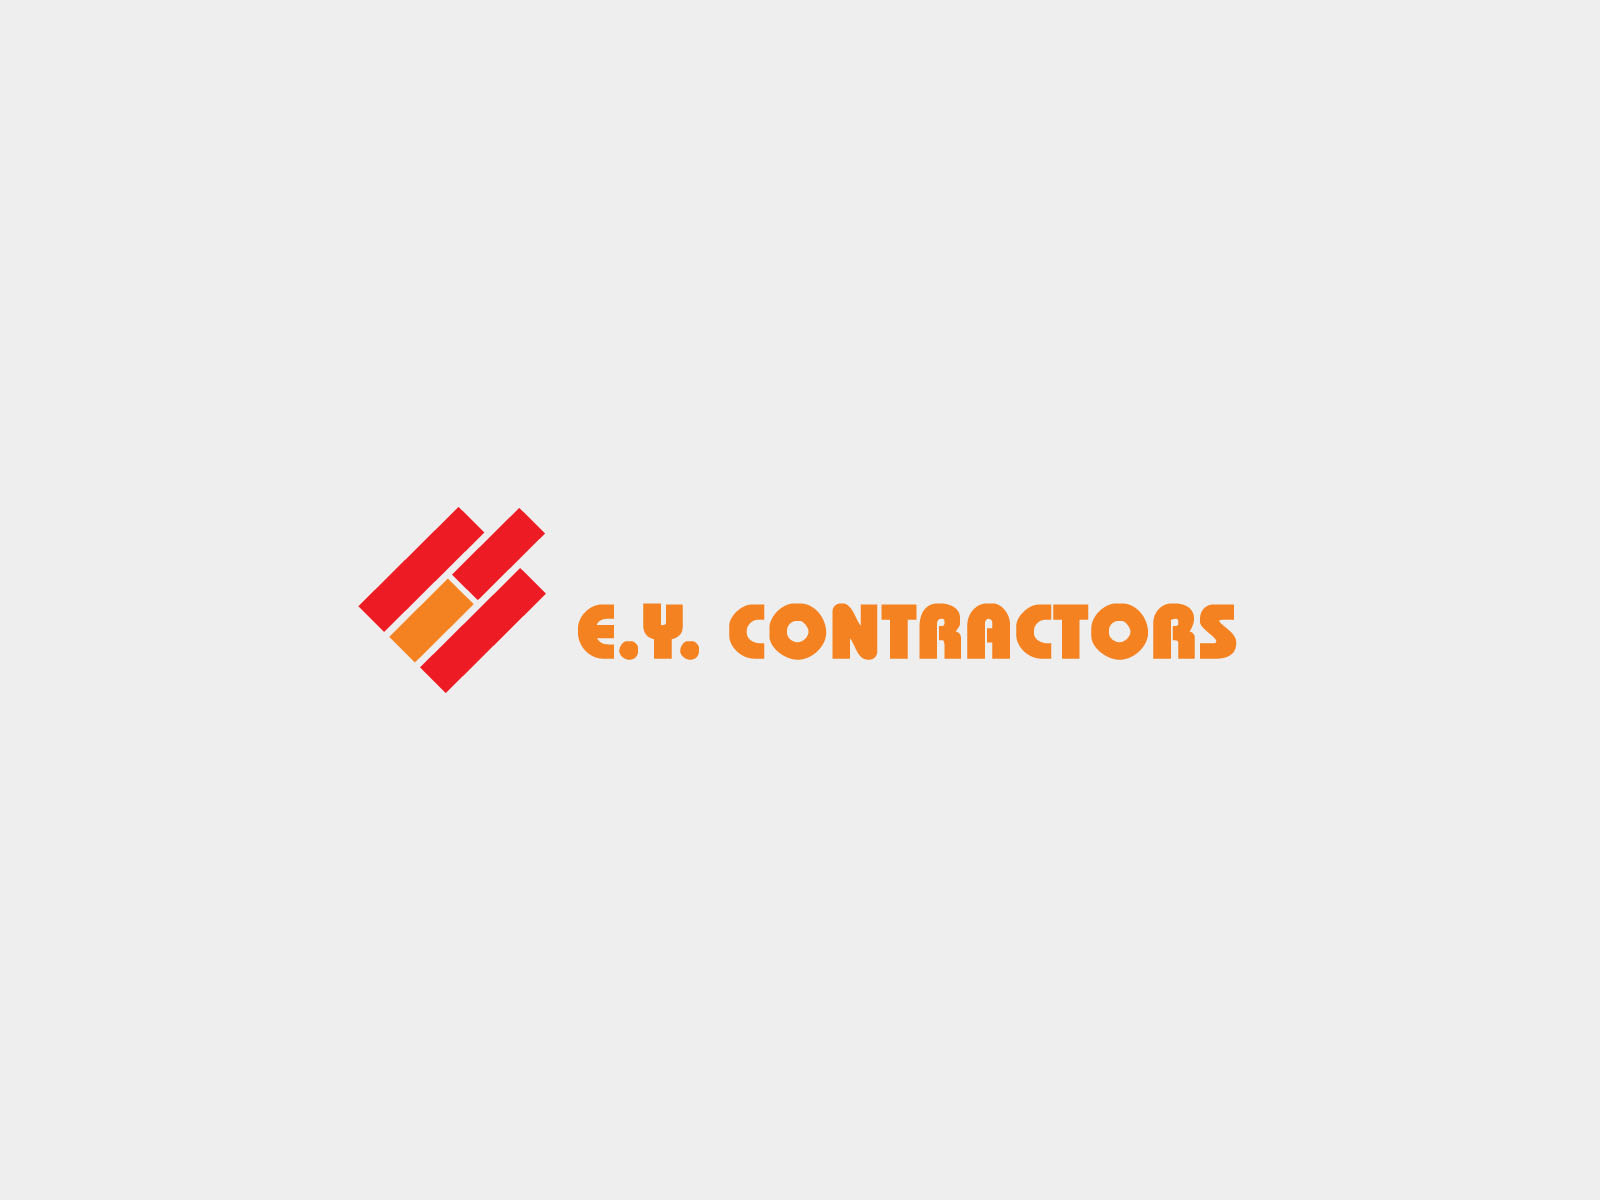 EY Contractors